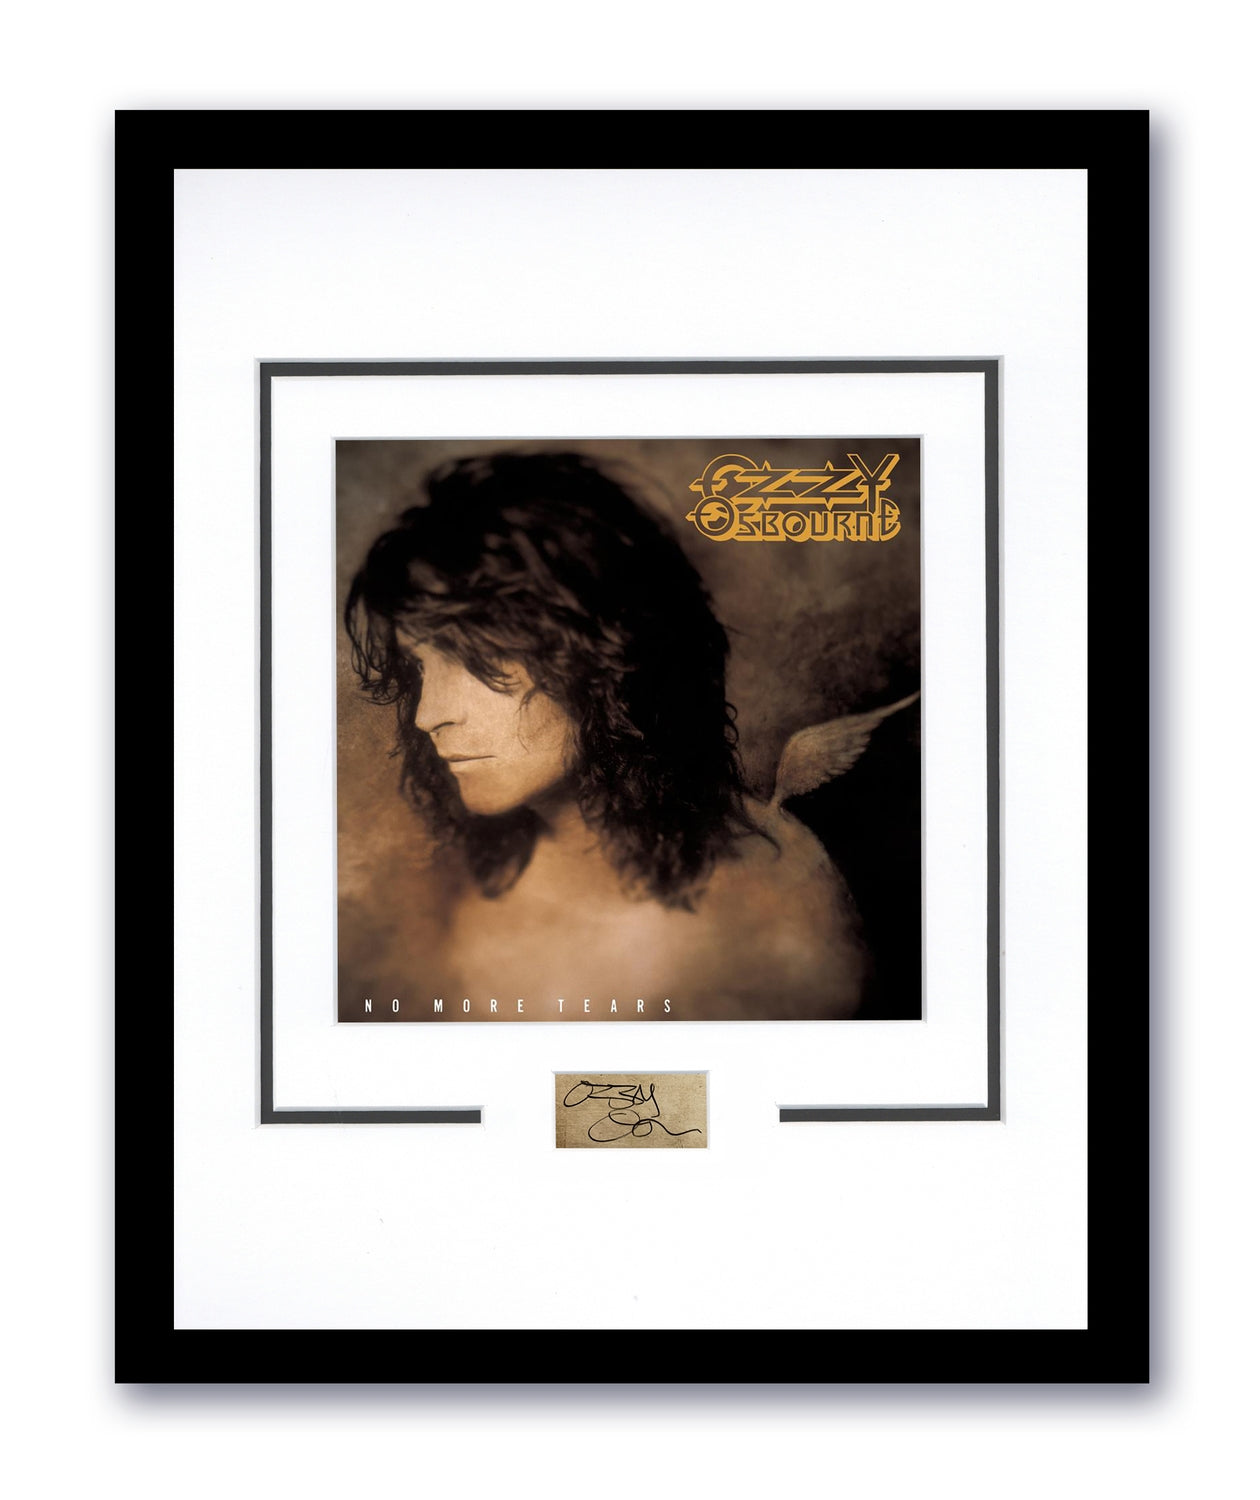 Ozzy Osbourne Autographed Signed 11x14 Framed Photo No More Tears ACOA